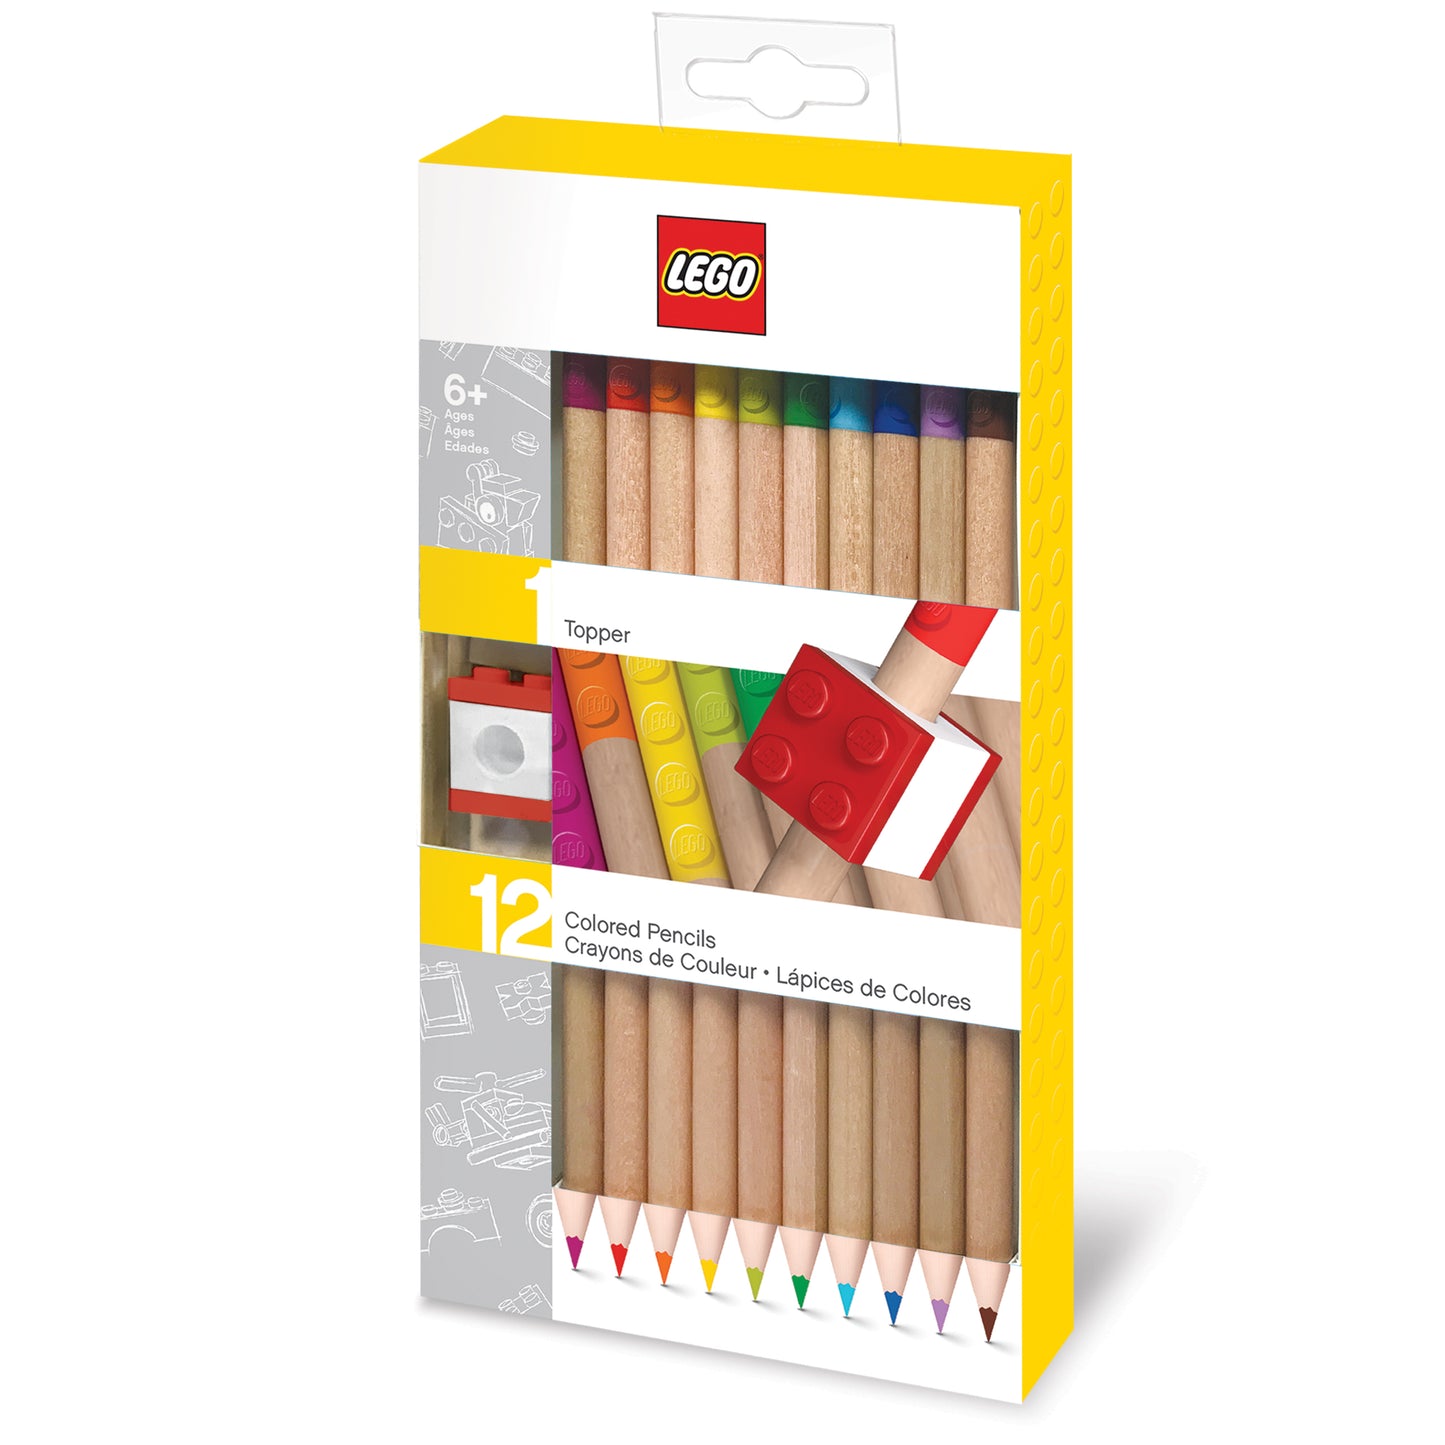 IQ 樂高 2.0文具 彩色鉛筆附一個積木鉛筆套 12支裝 (52064)